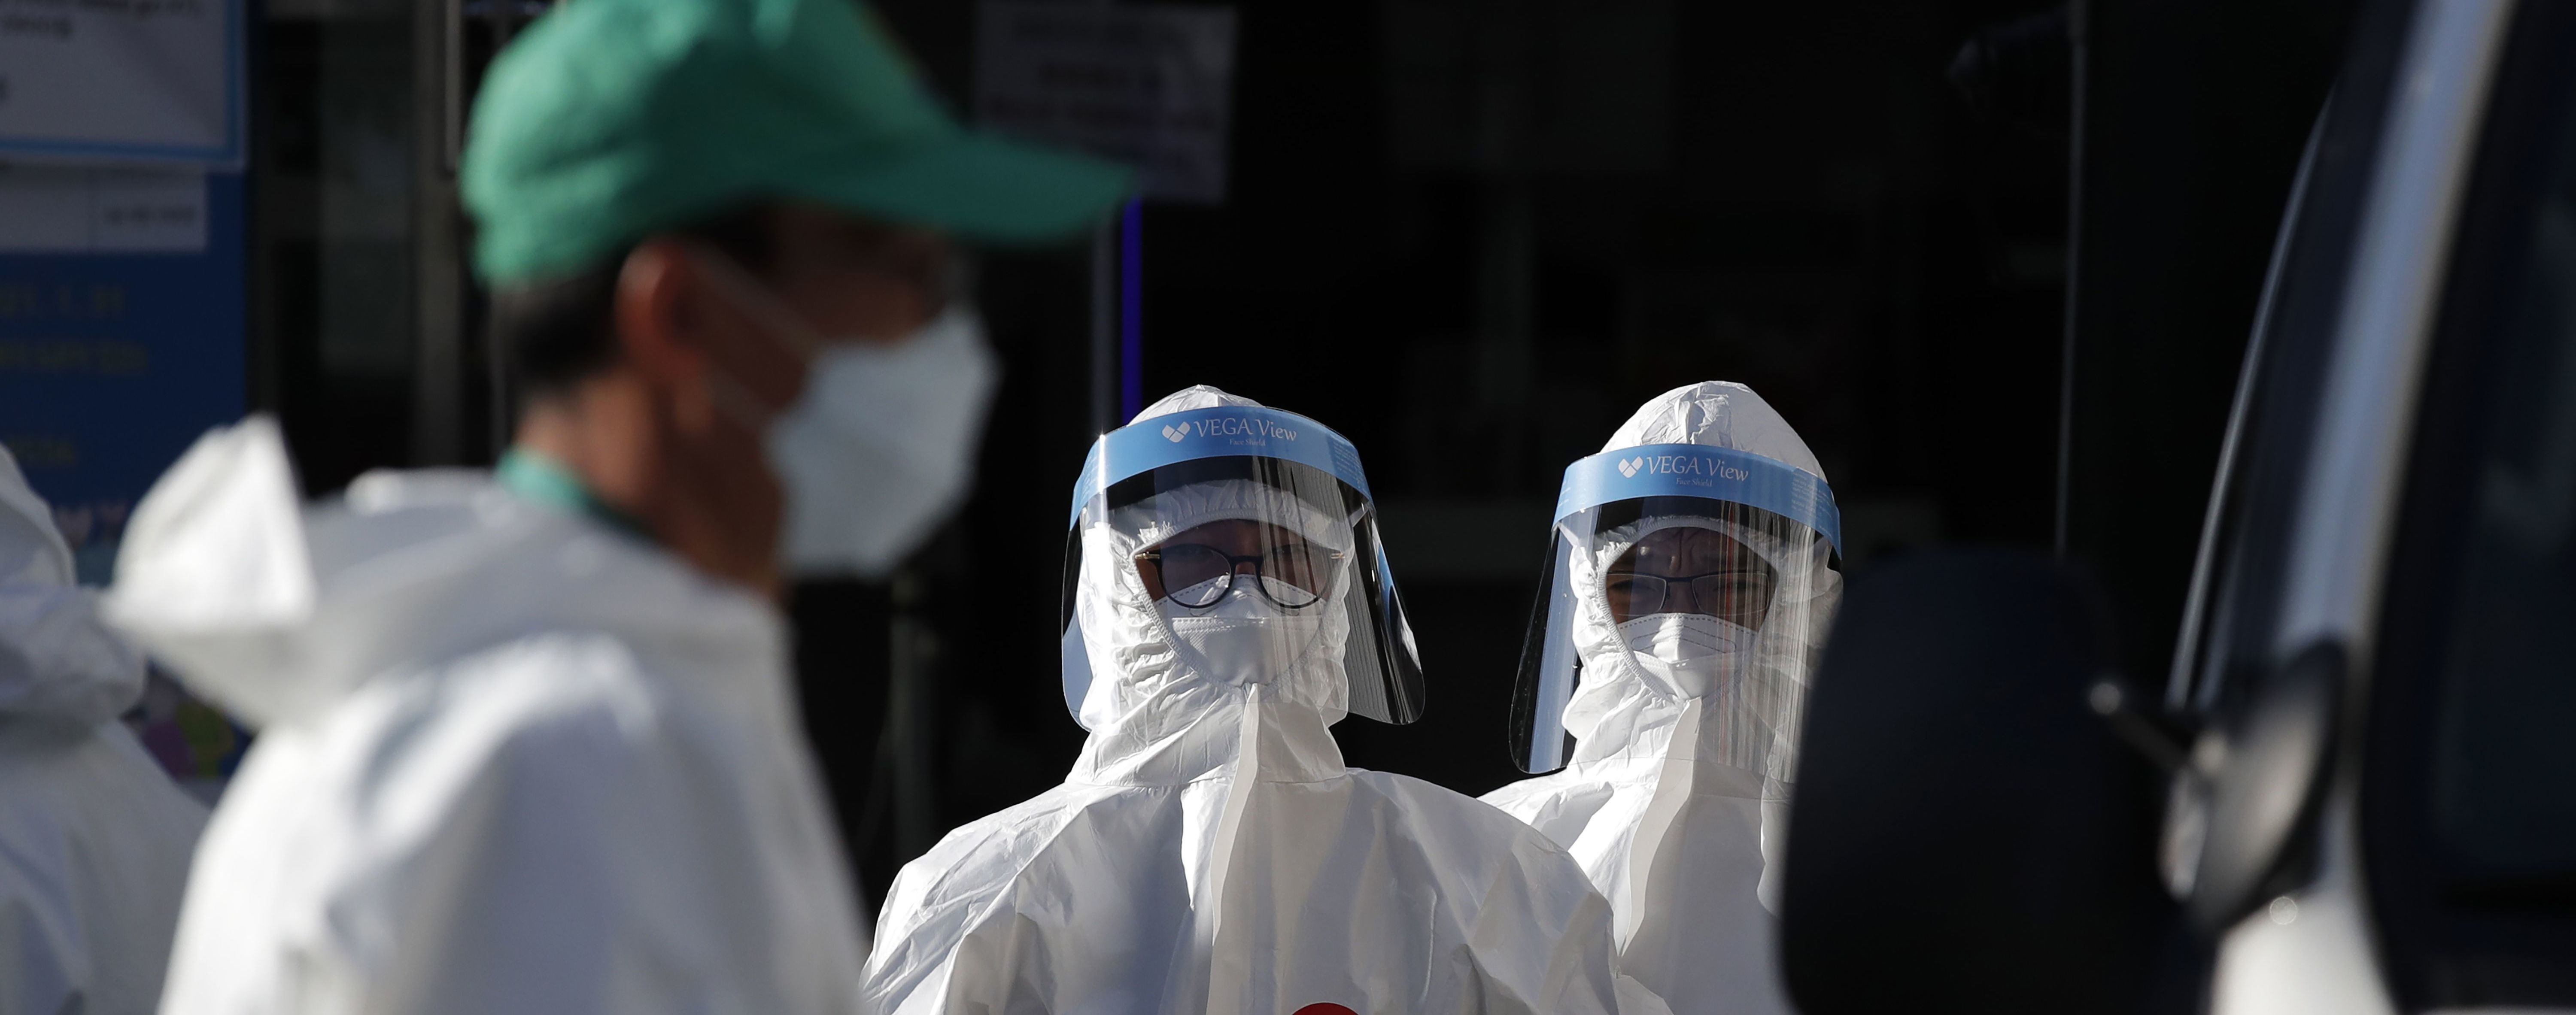 Количество случаев заражения коронавирусом в мире превысило новую миллионную отметку